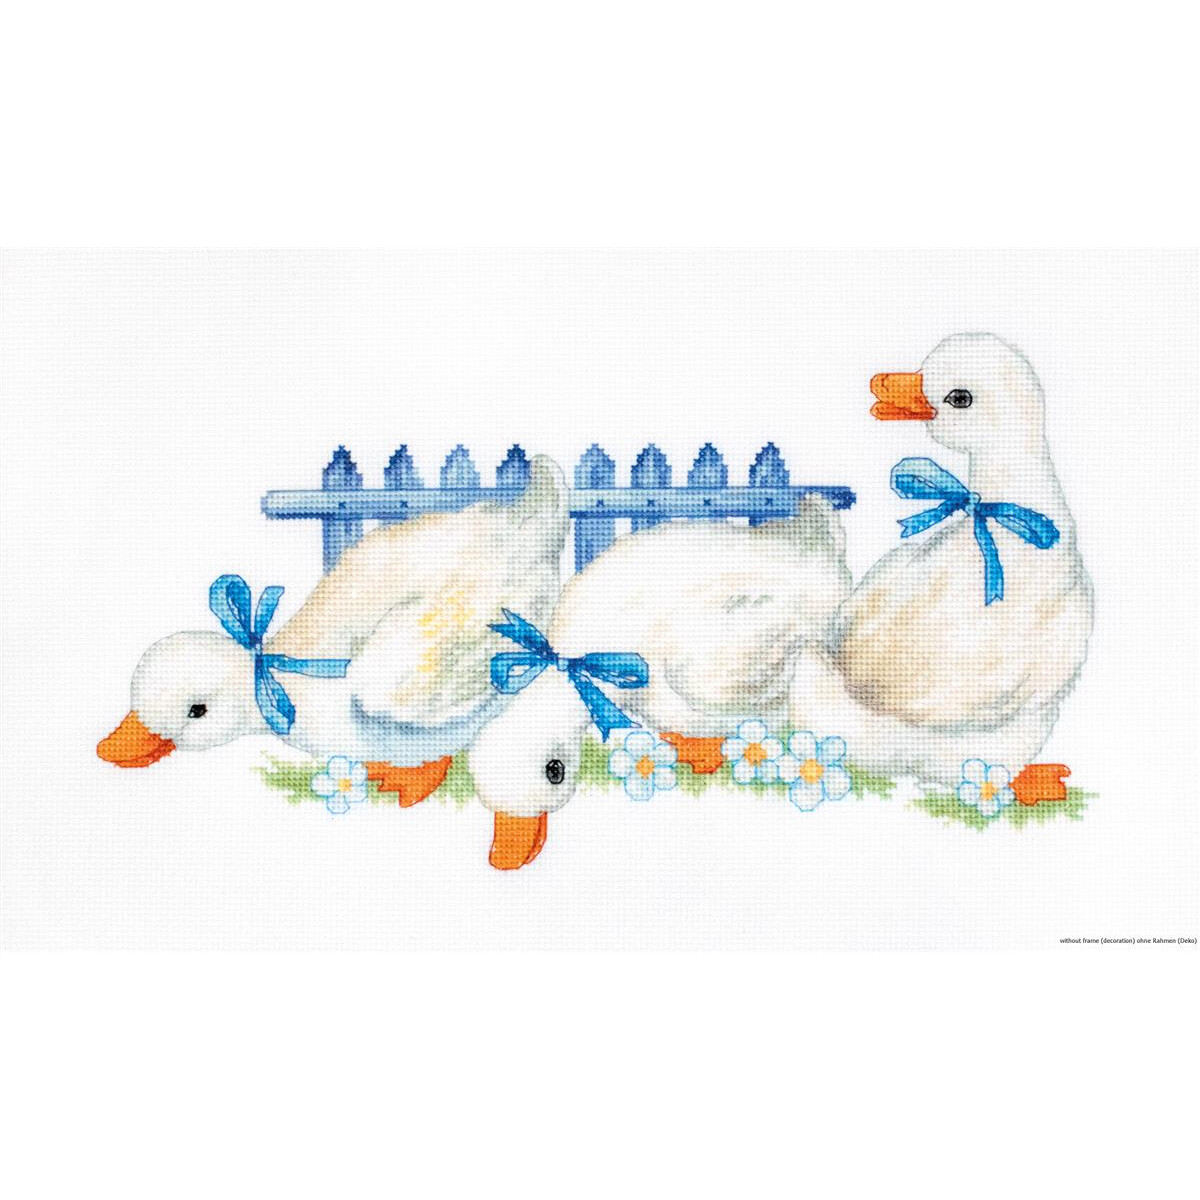 Иллюстрация с изображением трех белых уток с голубыми...